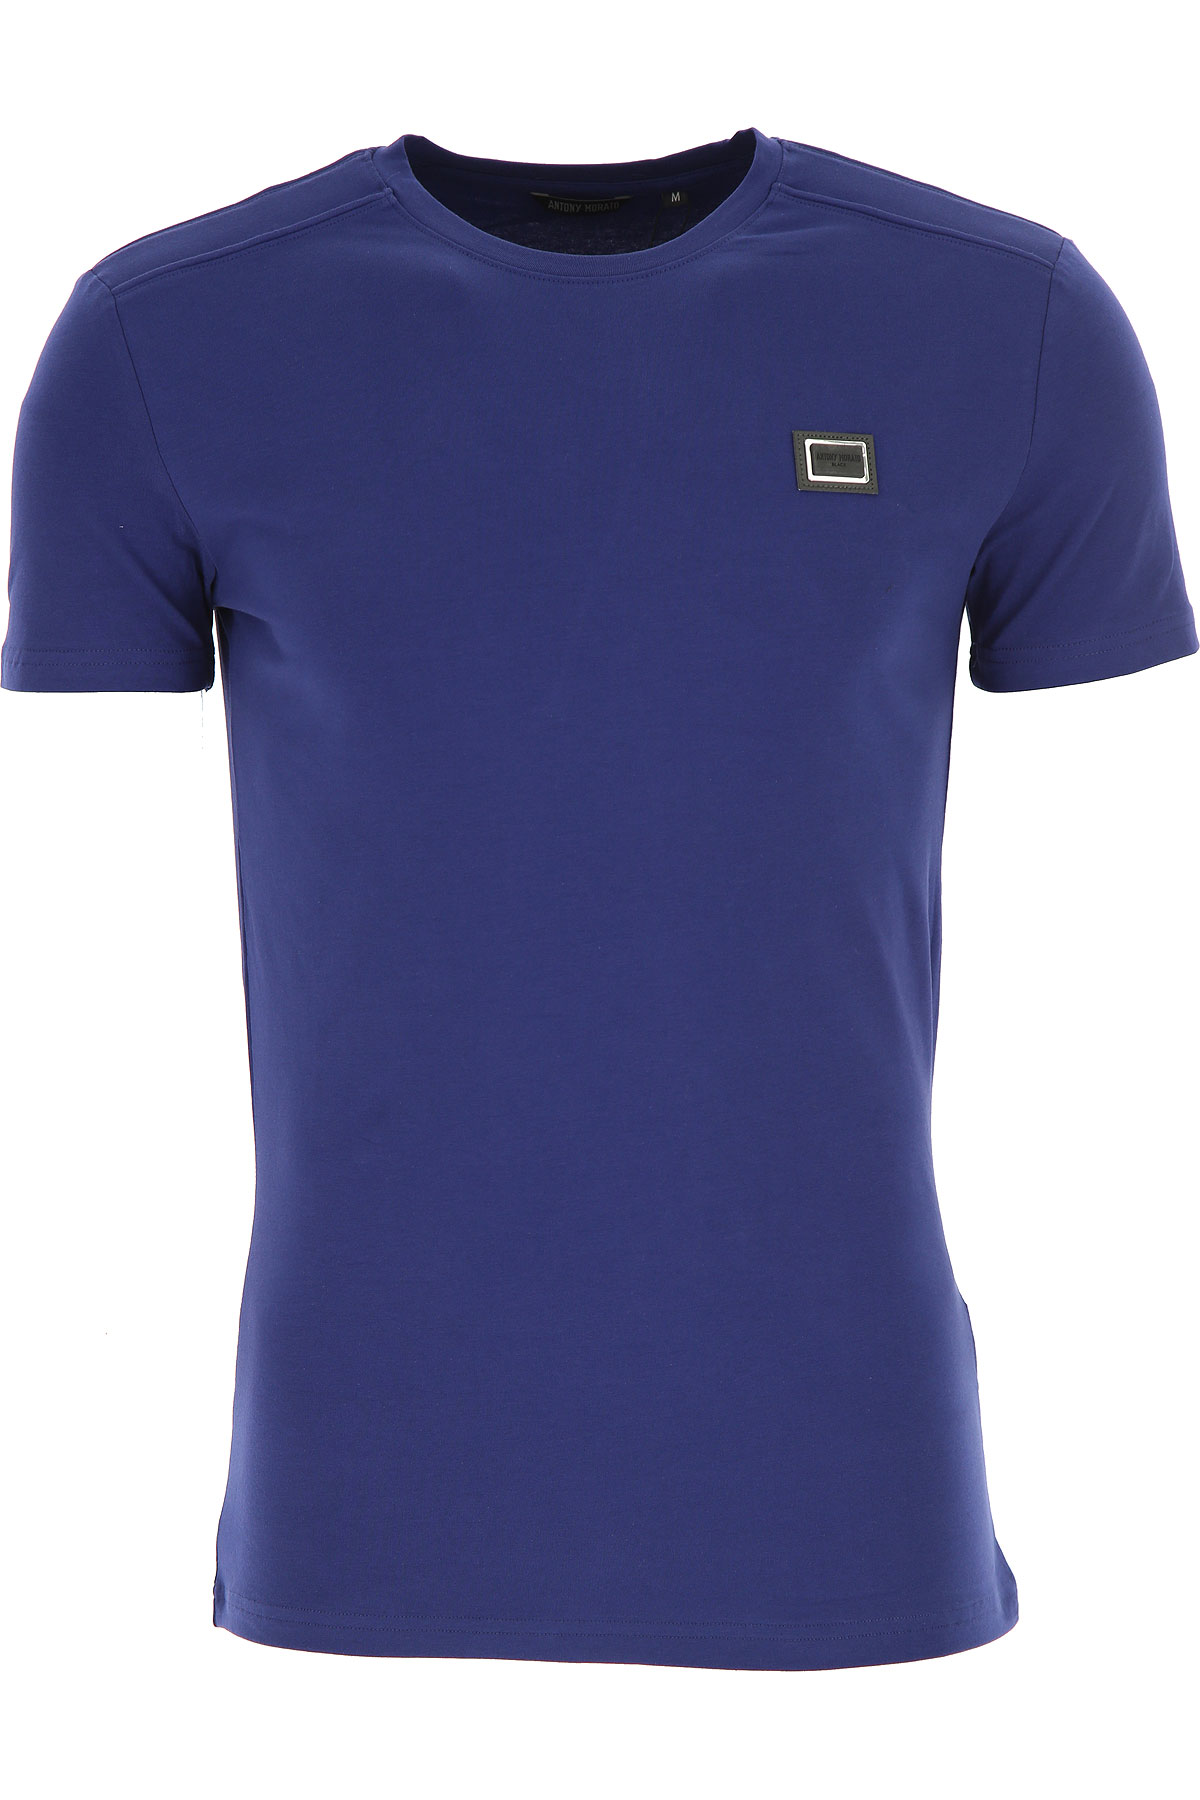 Antony Morato T-shirt Homme, Vert Armée, Coton, 2017, L M S XL XXL